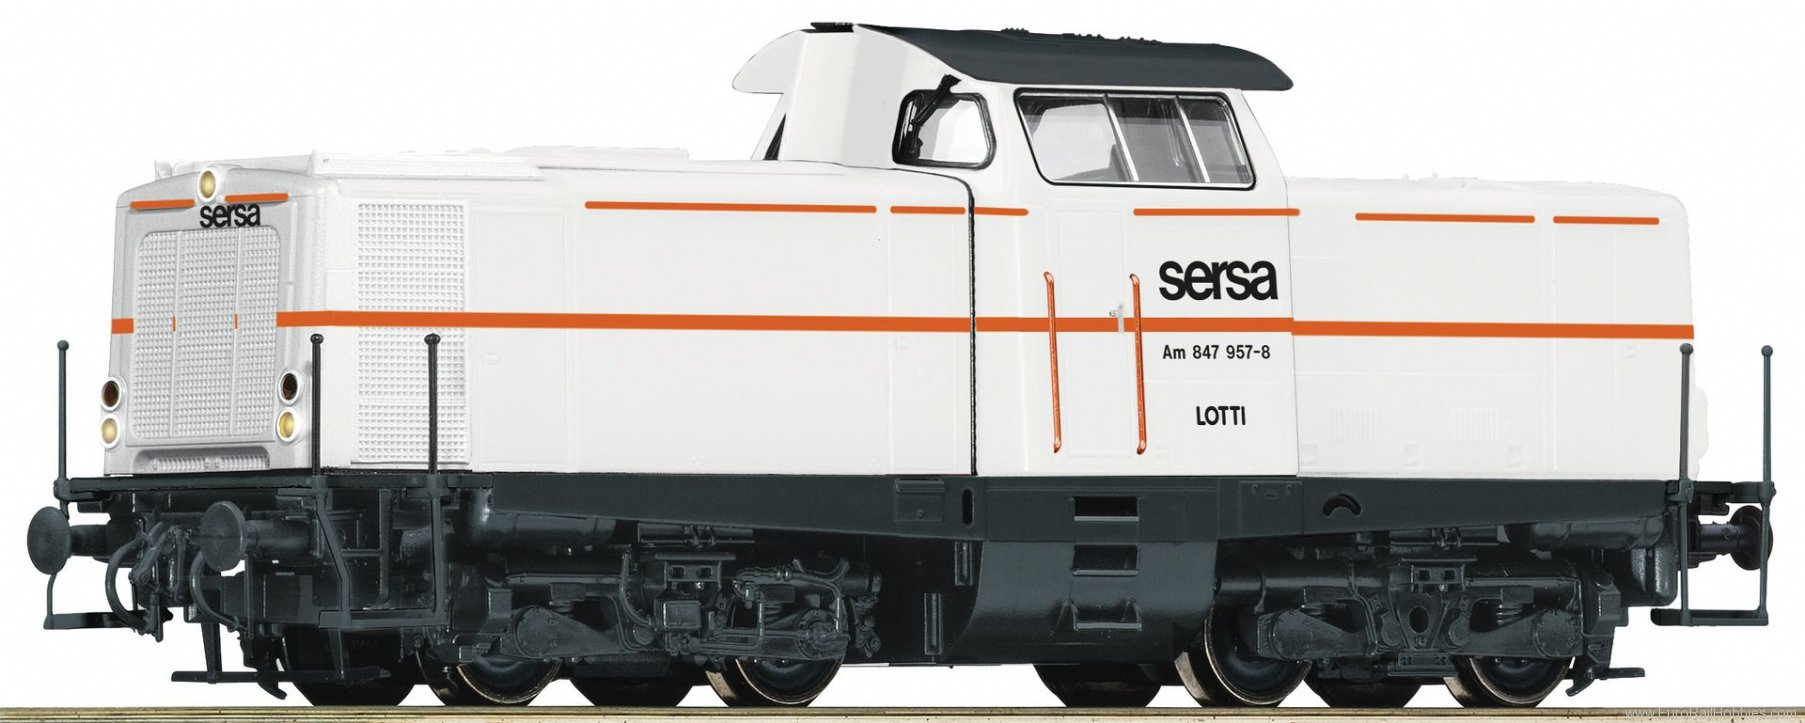 Roco 52565 SERSA Diesel locomotive Am 847 957-8, 